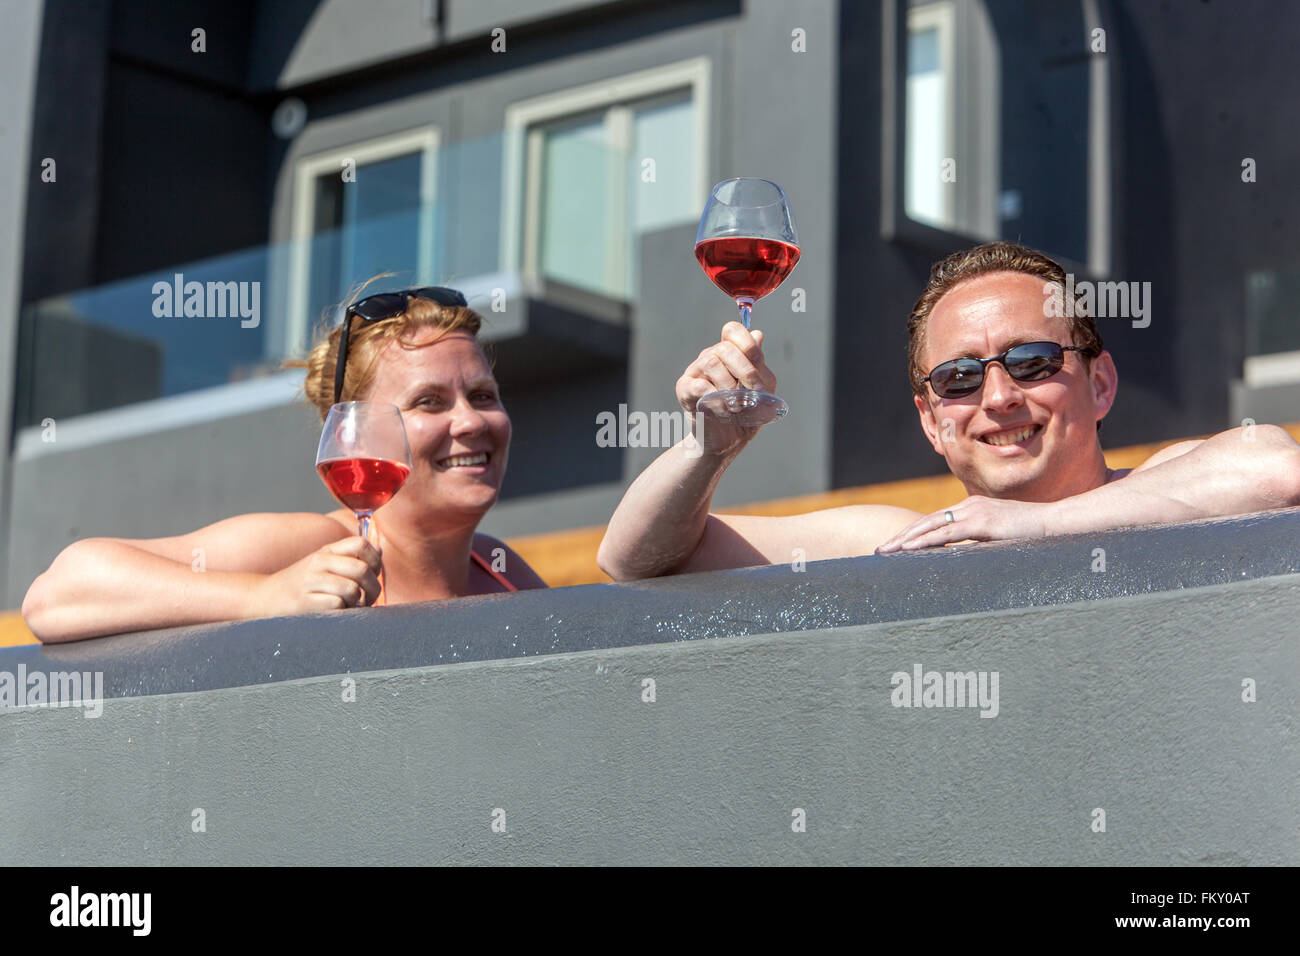 Gäste des Hotels trinken Rotwein auf der Terrasse und sonnen sich ihre Körper, Santorini, Griechenland Touristen genießen den Komfort der Terrassenmenschen auf der Terrasse Stockfoto